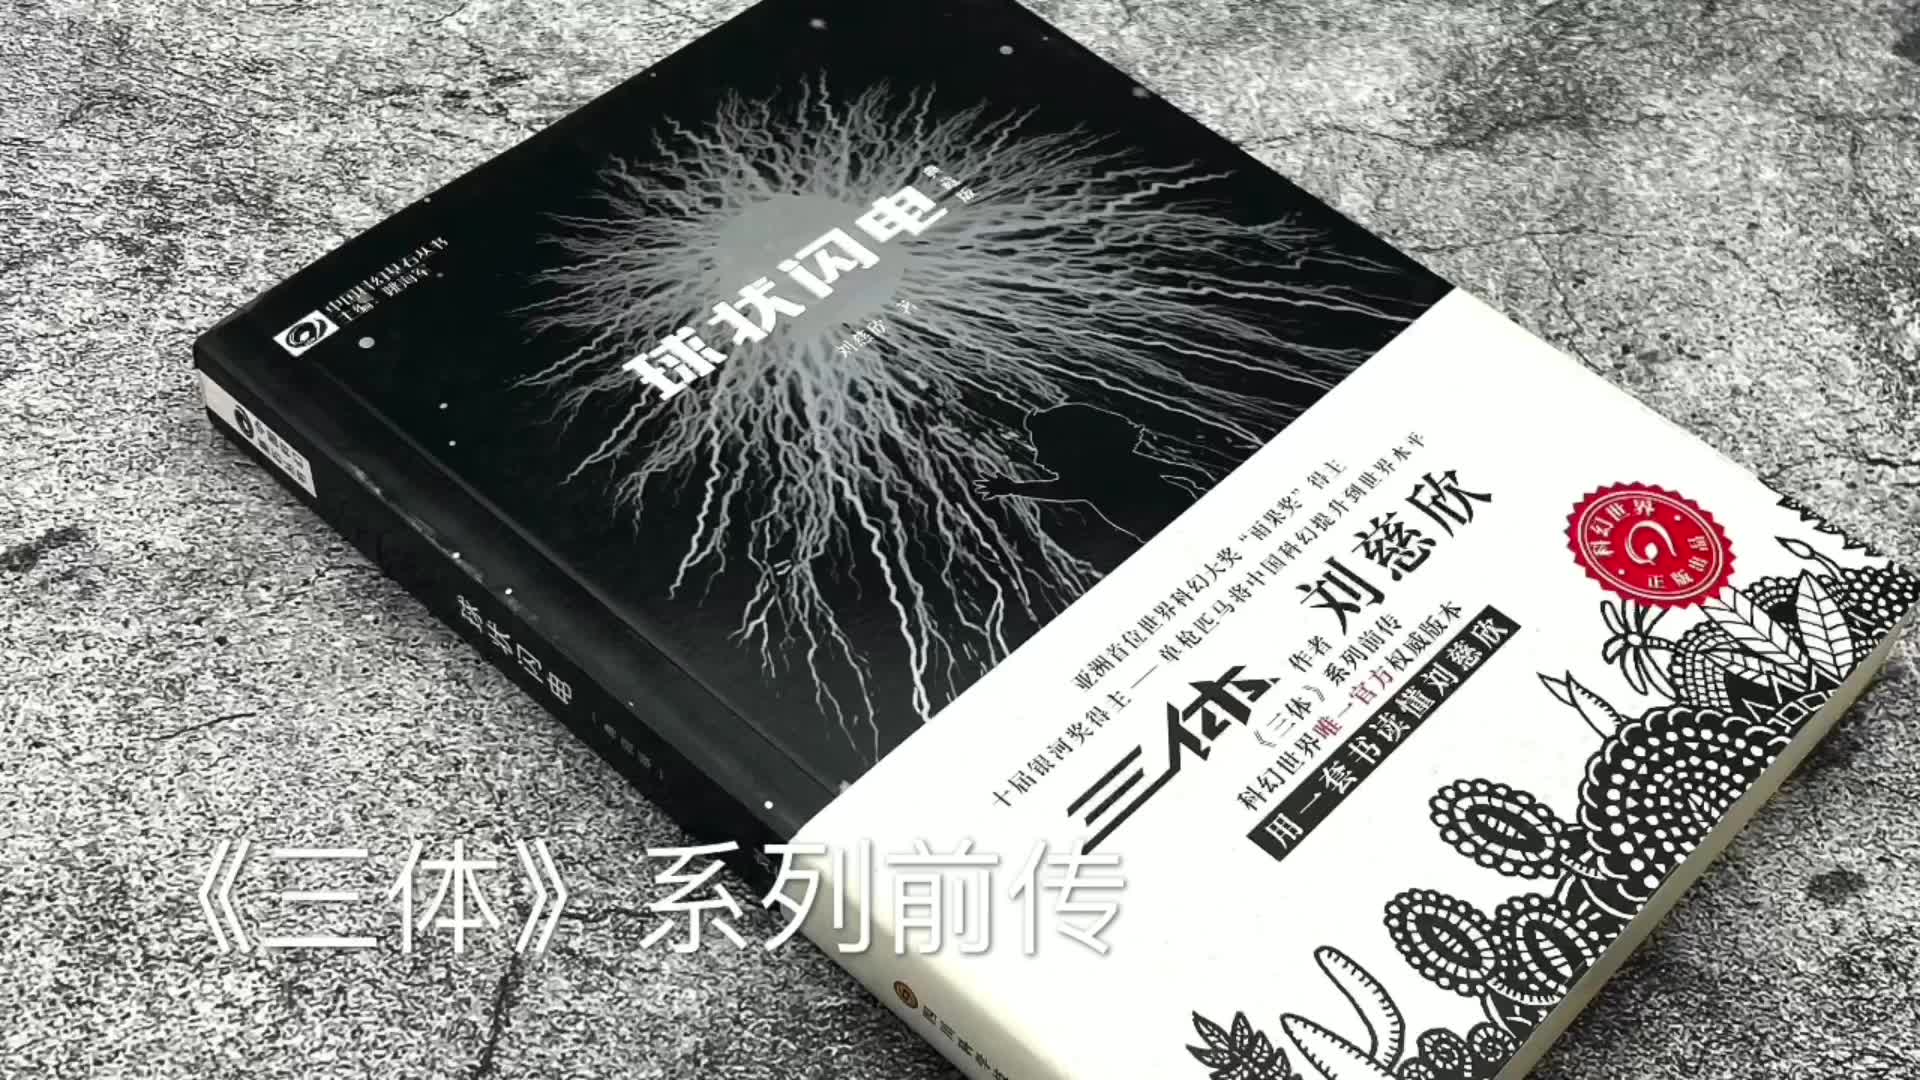 中国科幻基石丛书球状闪电典藏版